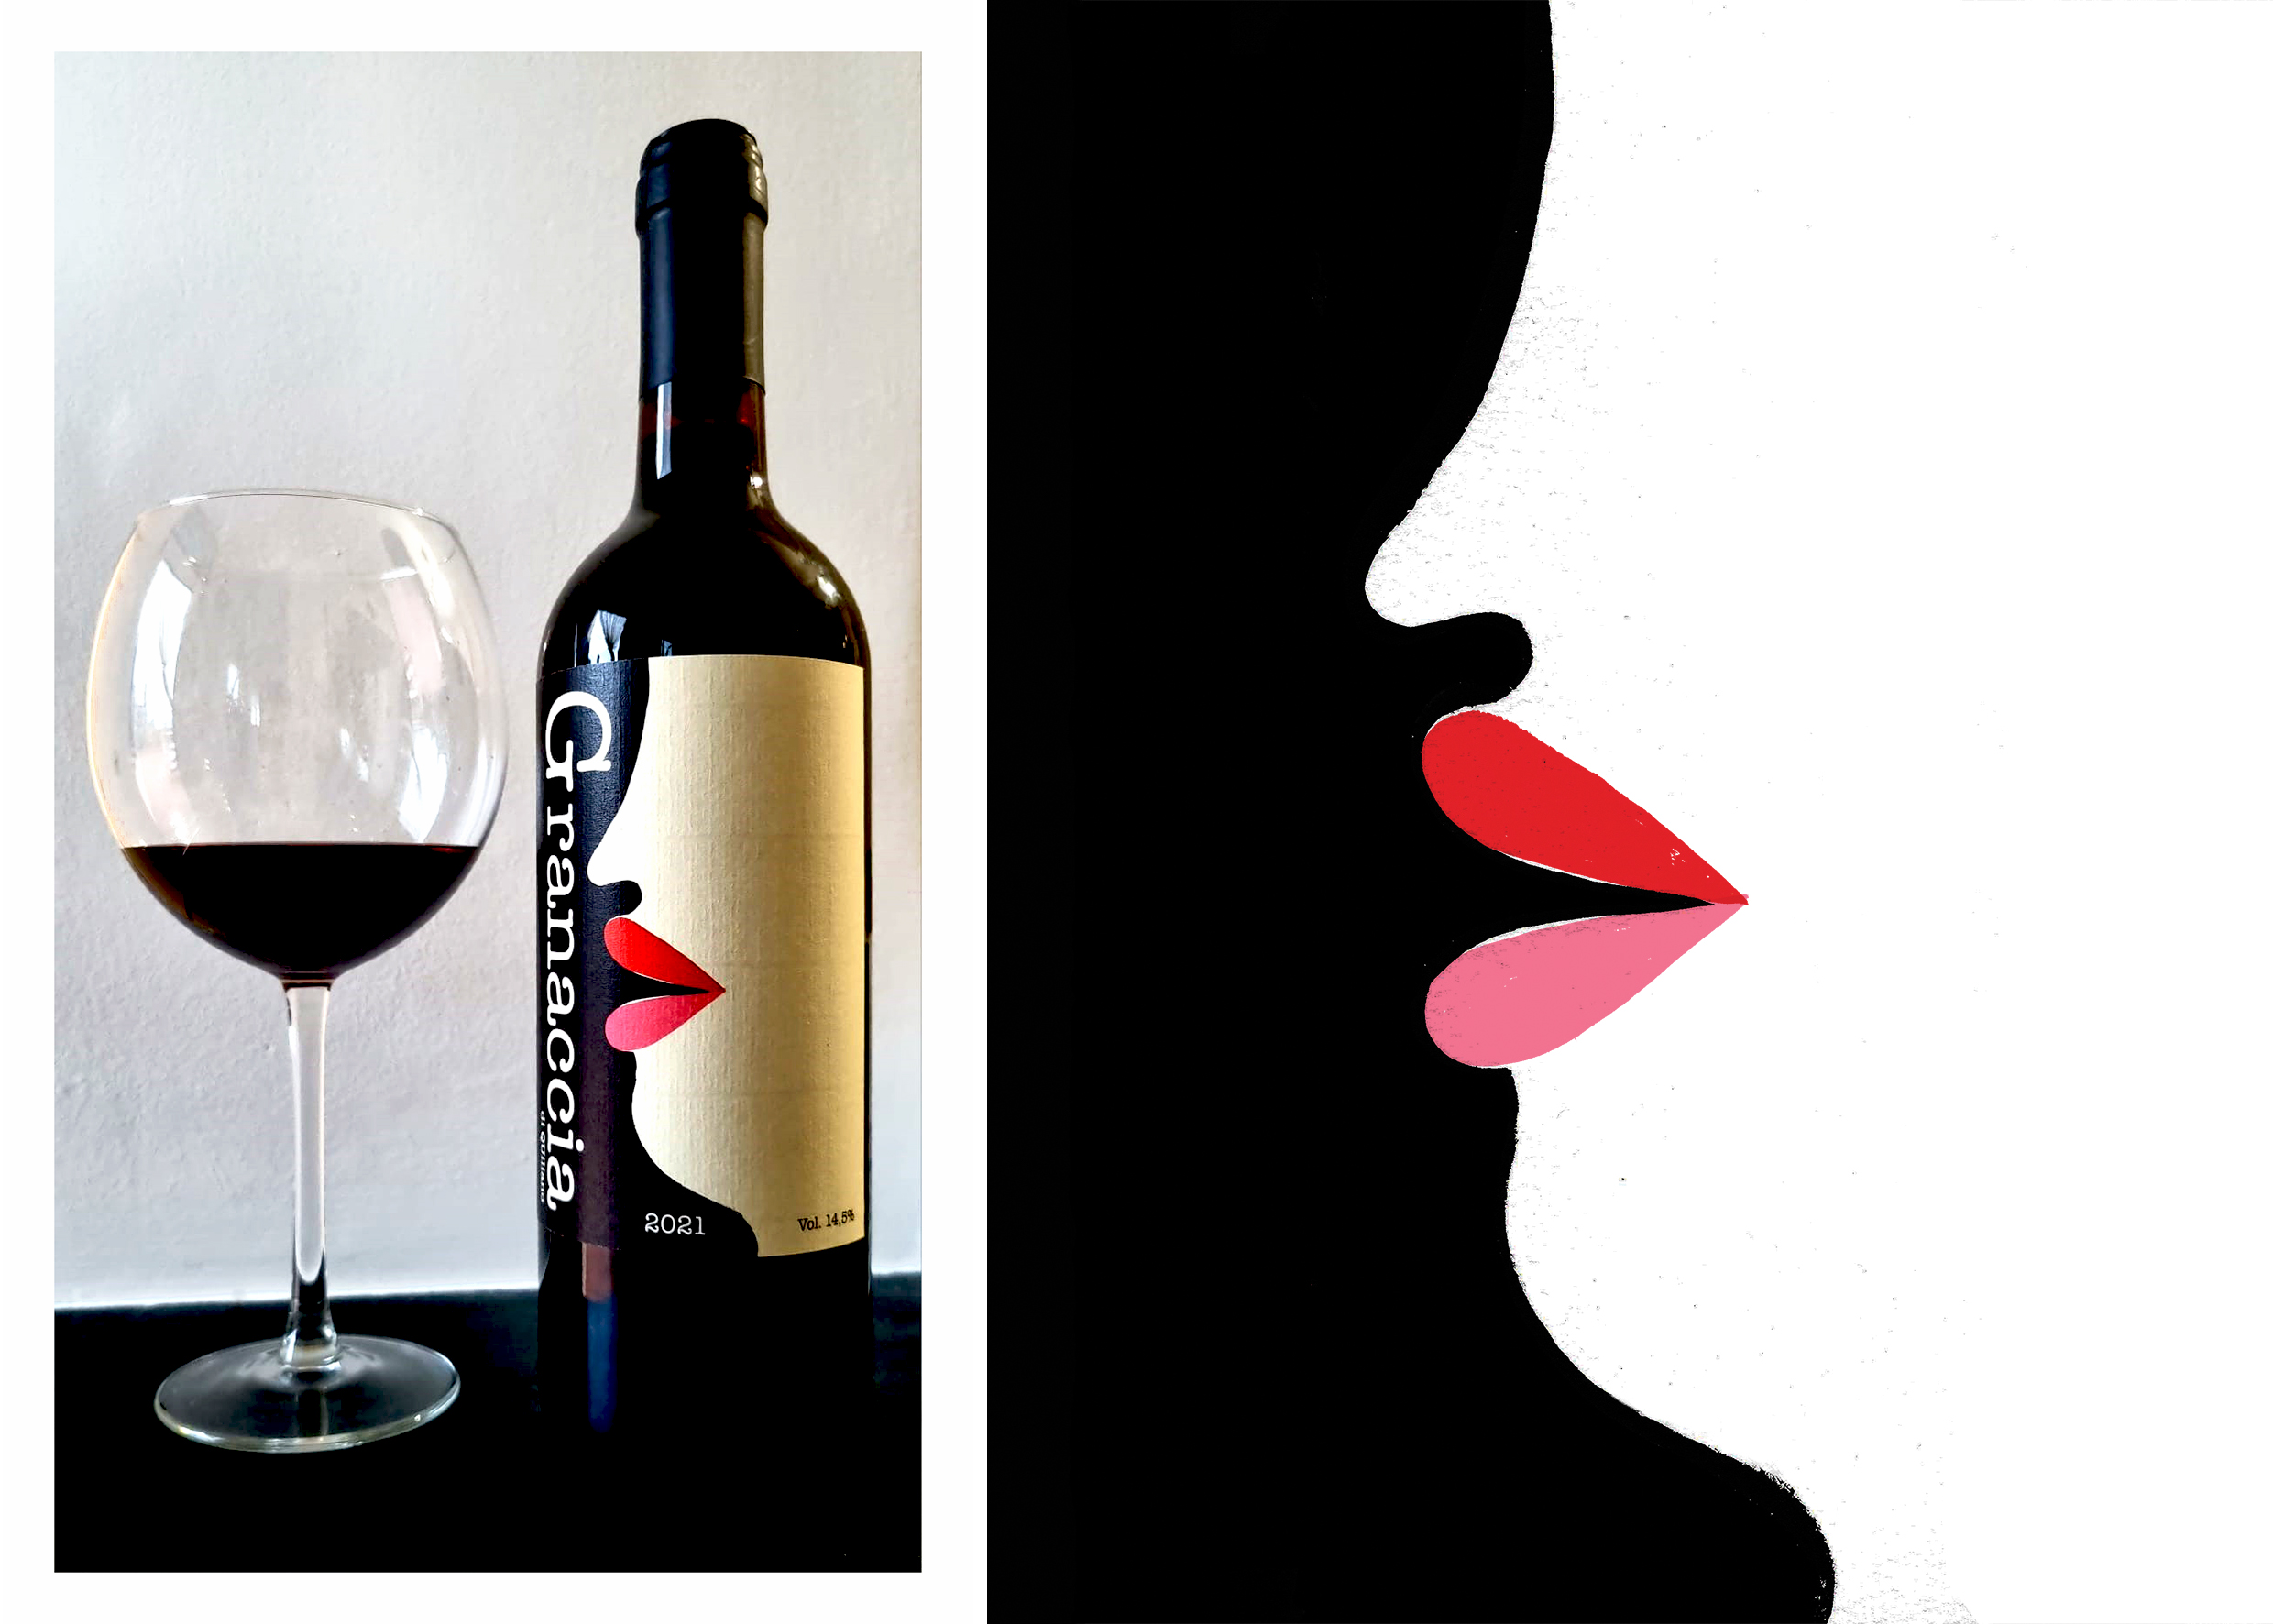 Graphic design and illustration of the Granaccia wine label